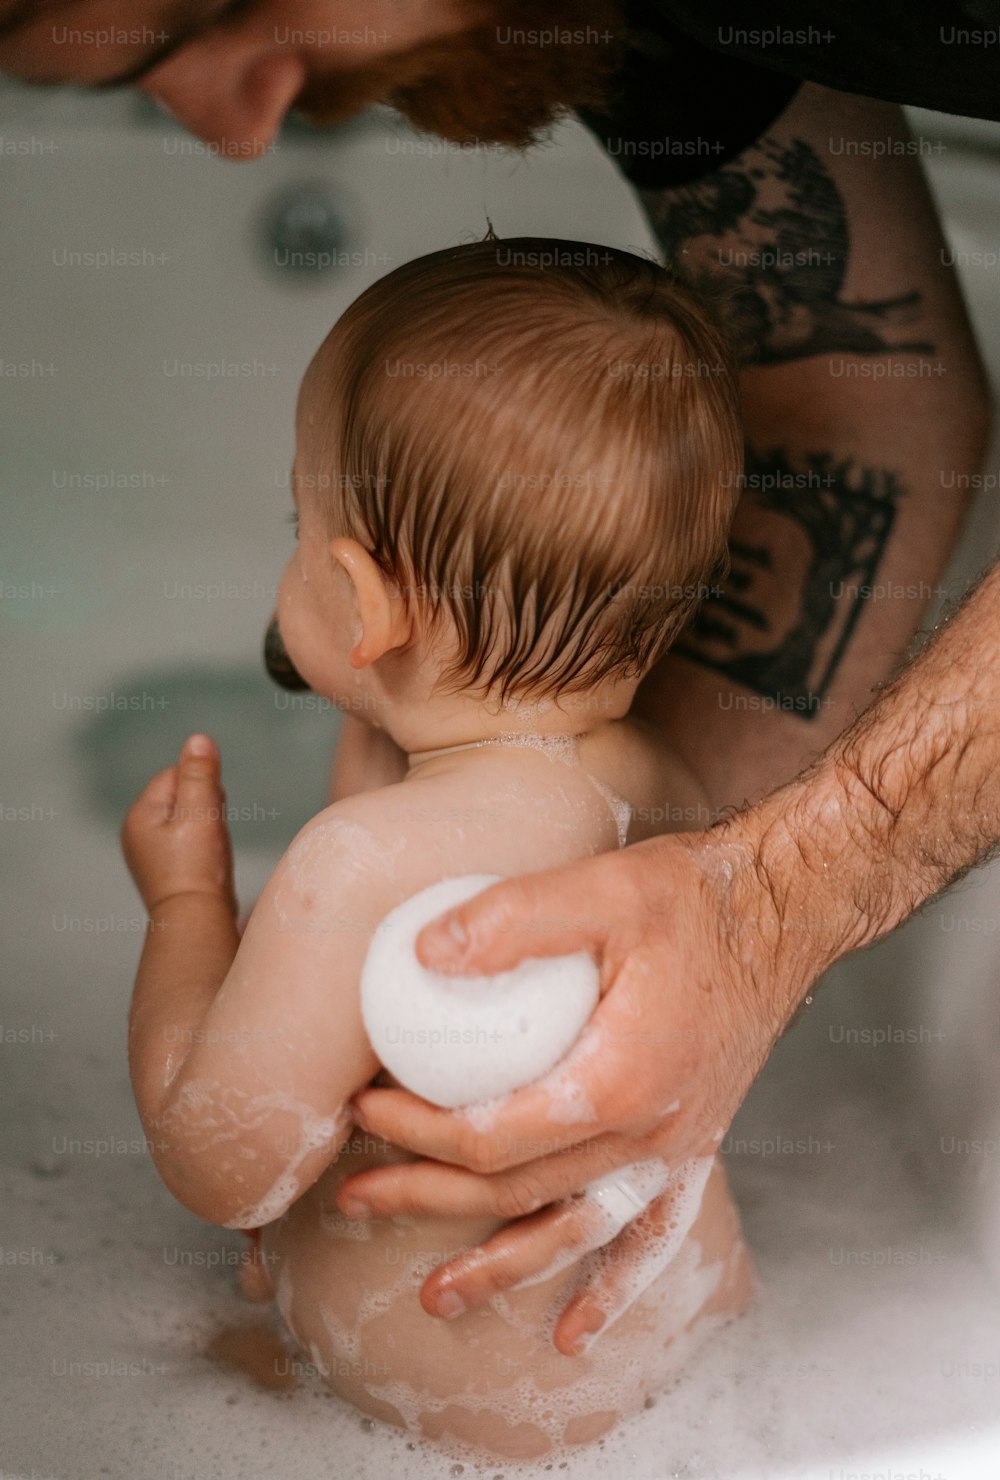 a man holding a baby in a bath tub